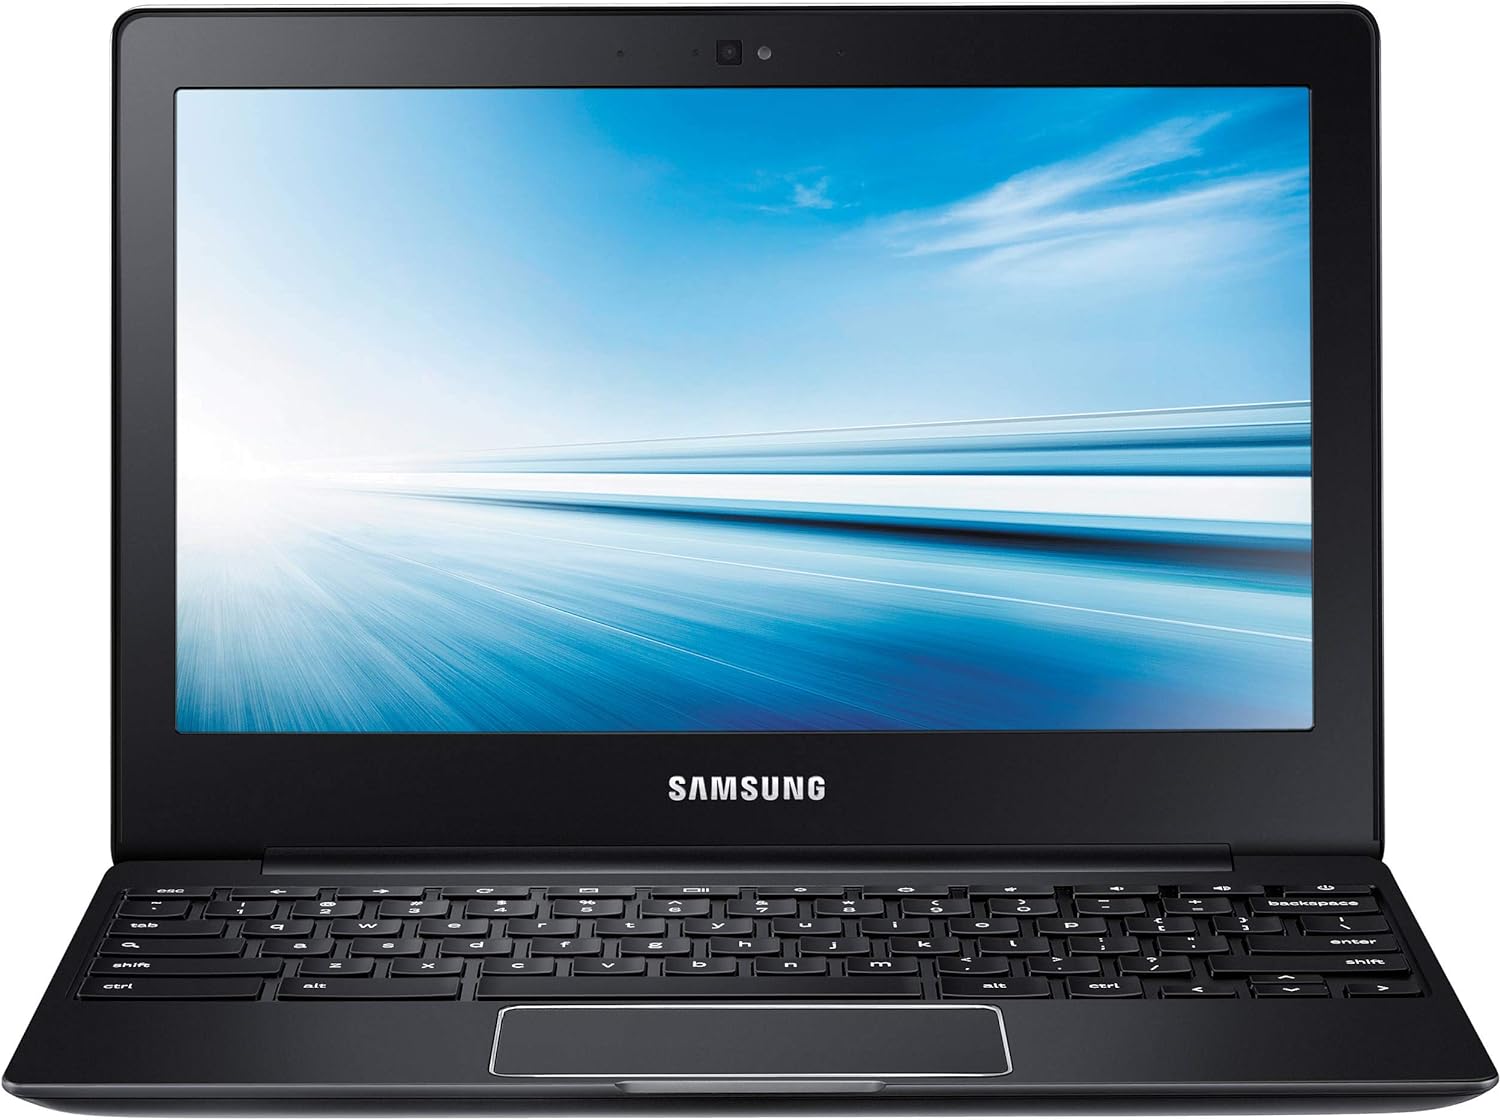 Refurbished Samsung Chromebook 2 Exynos 5 Octa 5420 4GB RAM 16GB 11.6" - Good